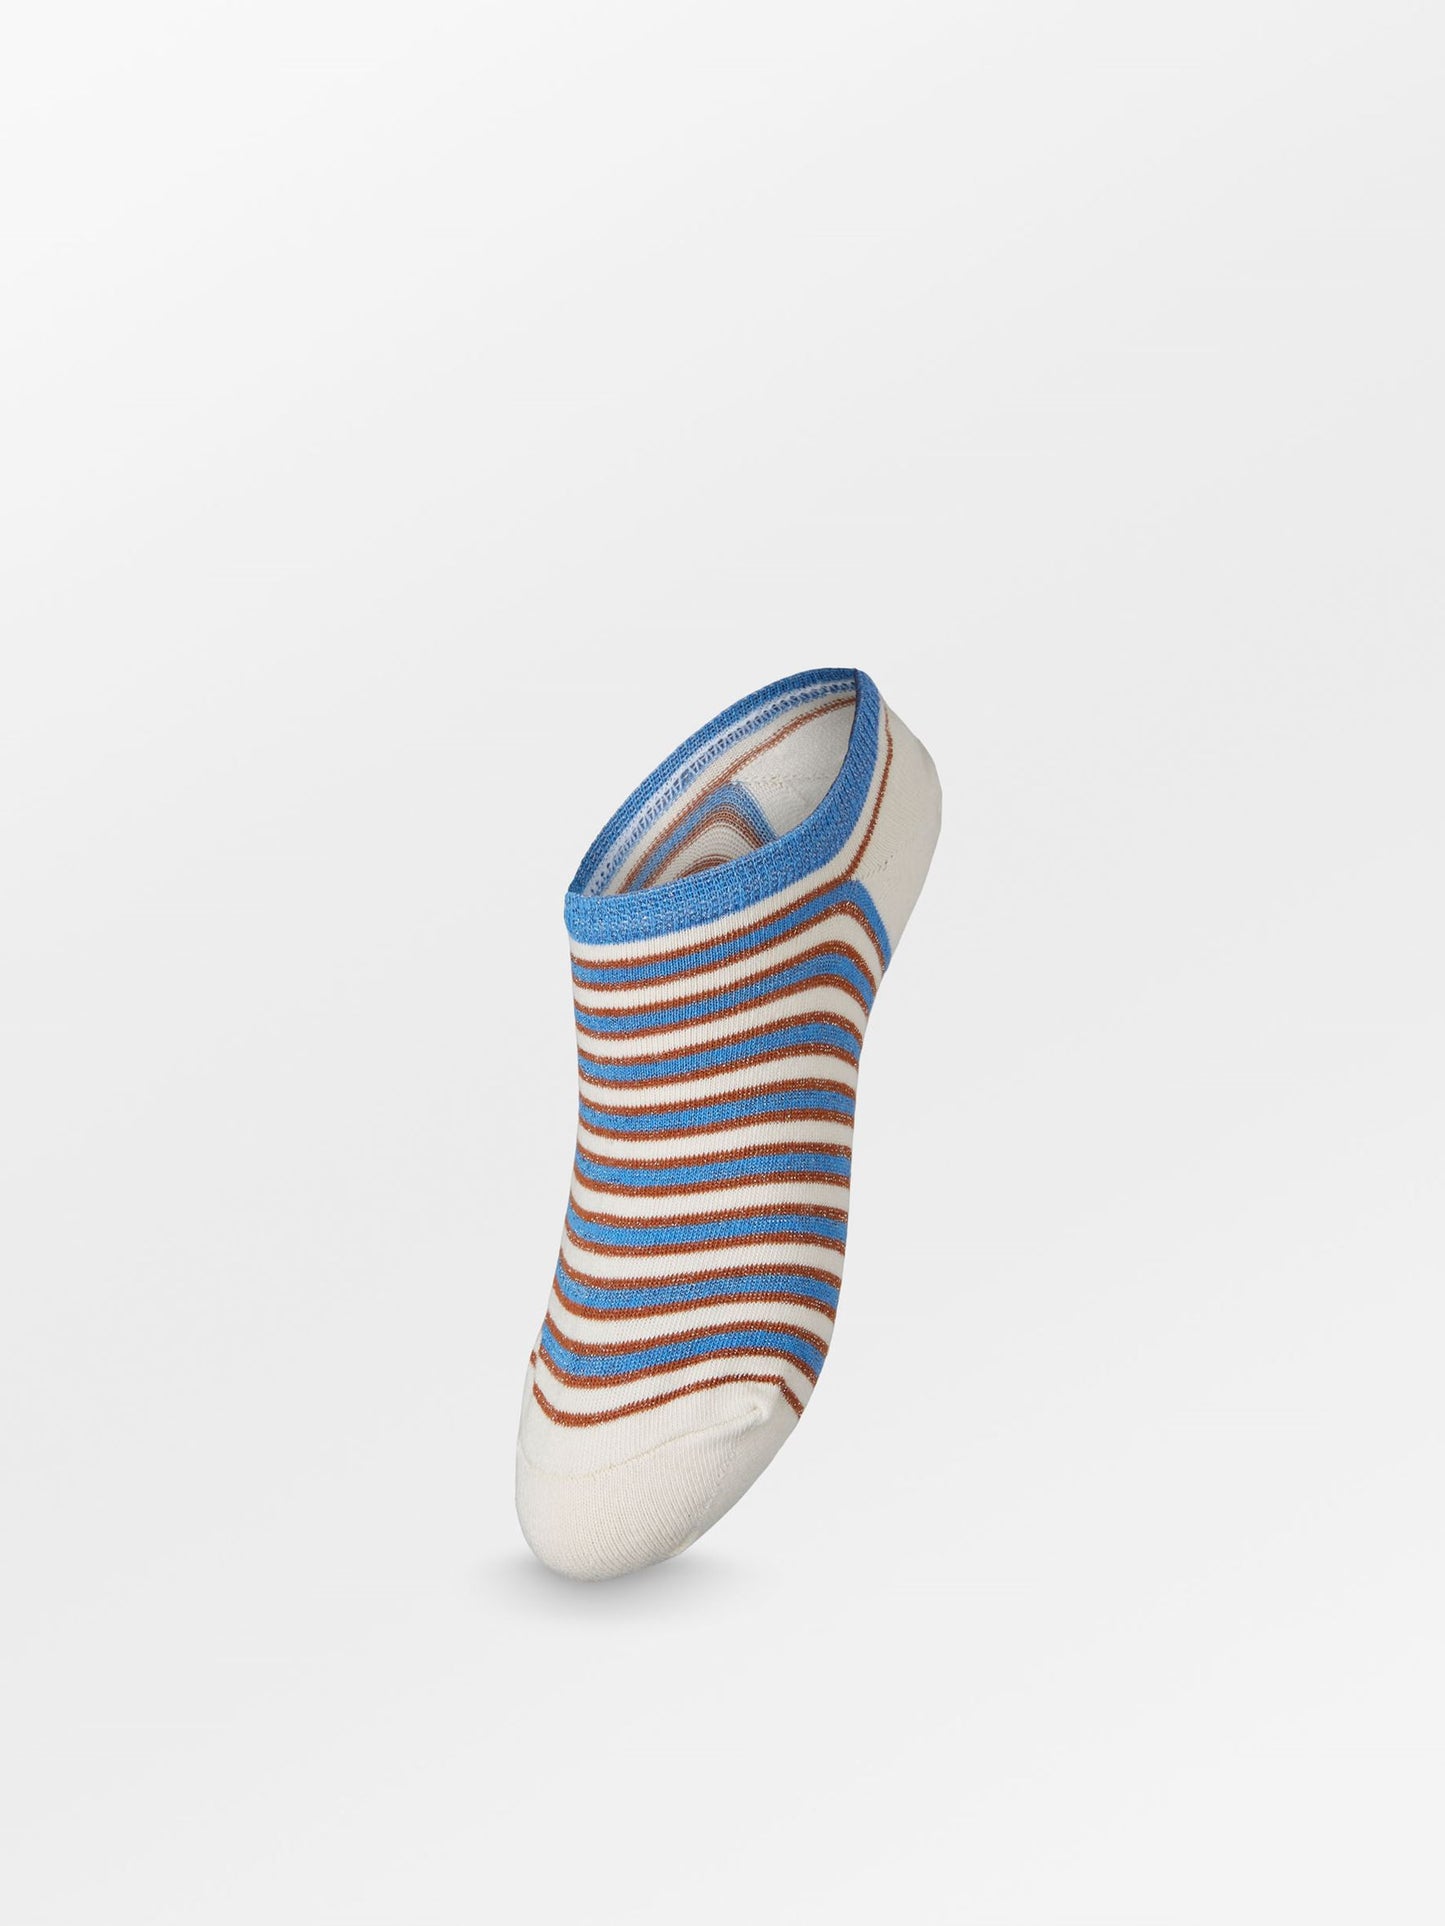 Becksöndergaard, Sneakie Multi Stripe Sock - Little Boy Blue, archive, archive, sale, sale